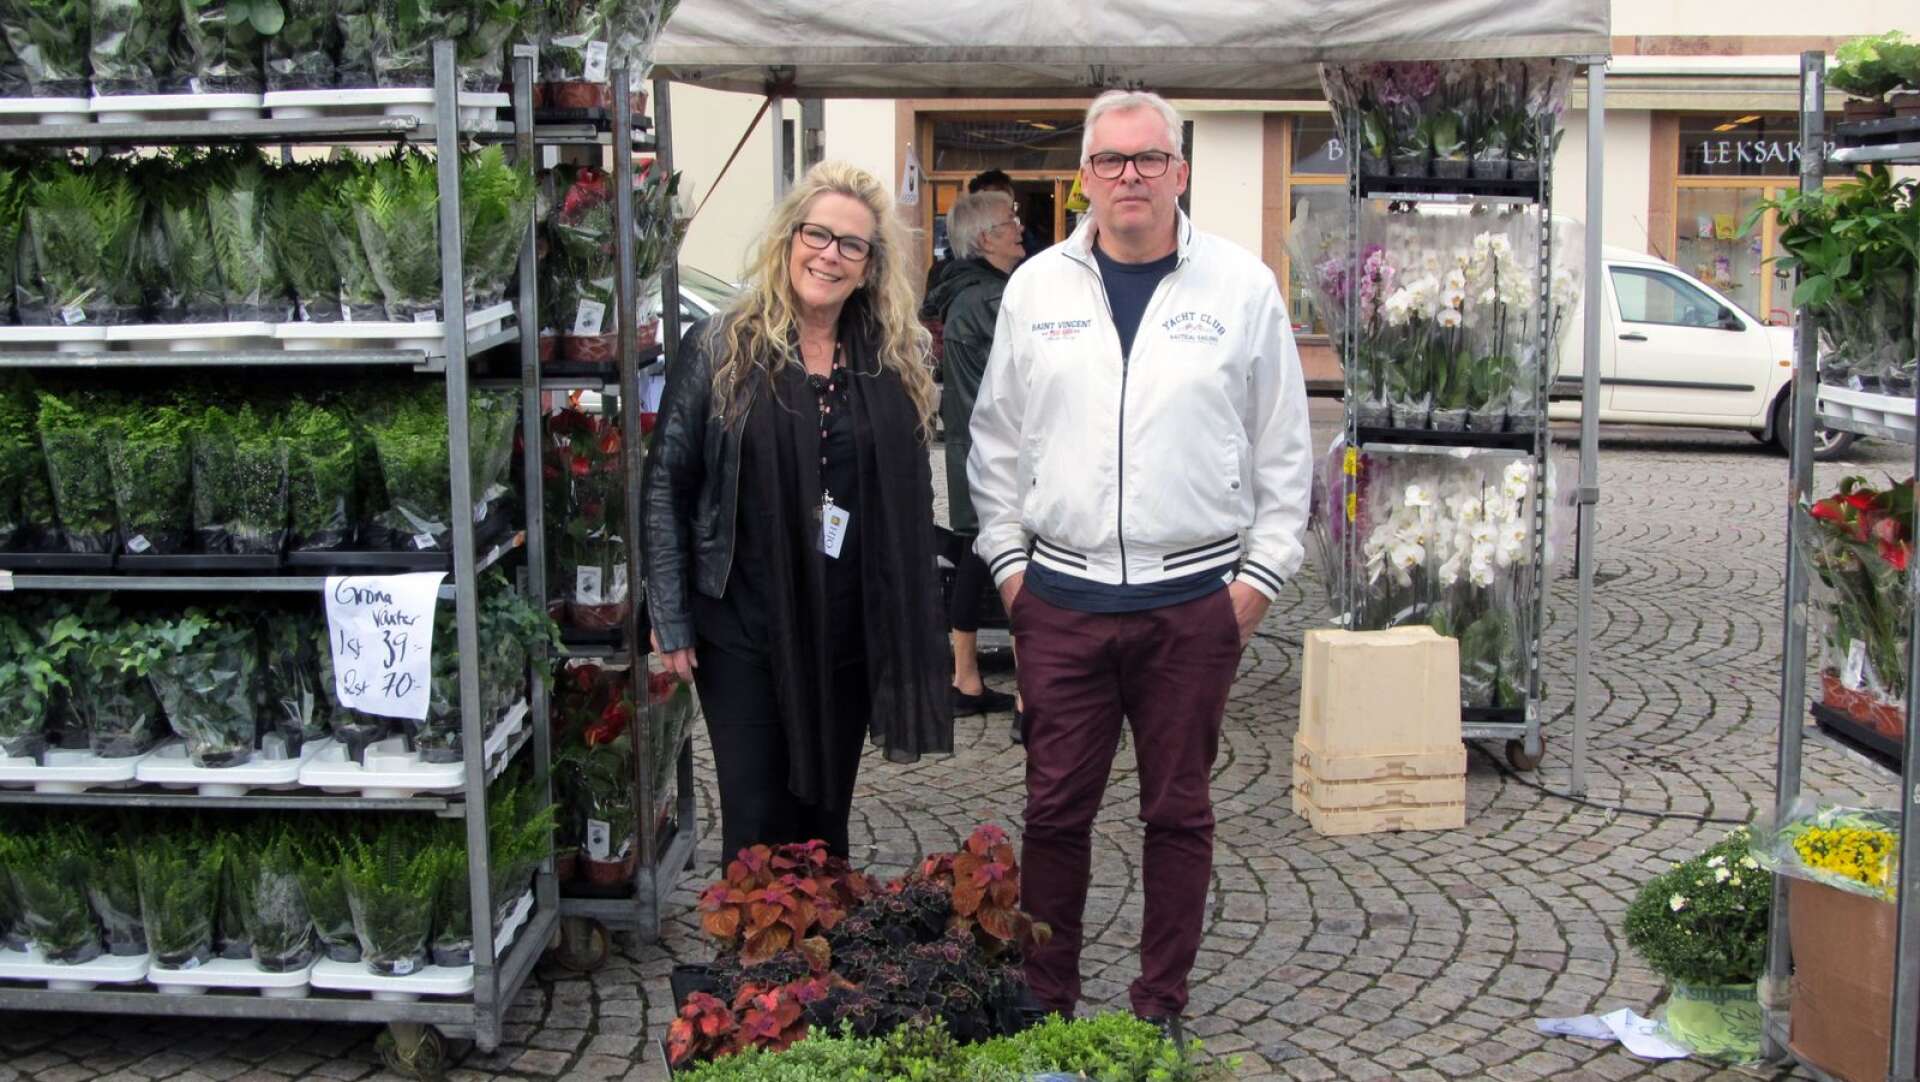 Näringslivschef Kristina Mustajärvi och handelsutvecklare Ingemar Gustafsson mitt i kommersen på torget. De gläds över Hjohandelns ökade omsättning.